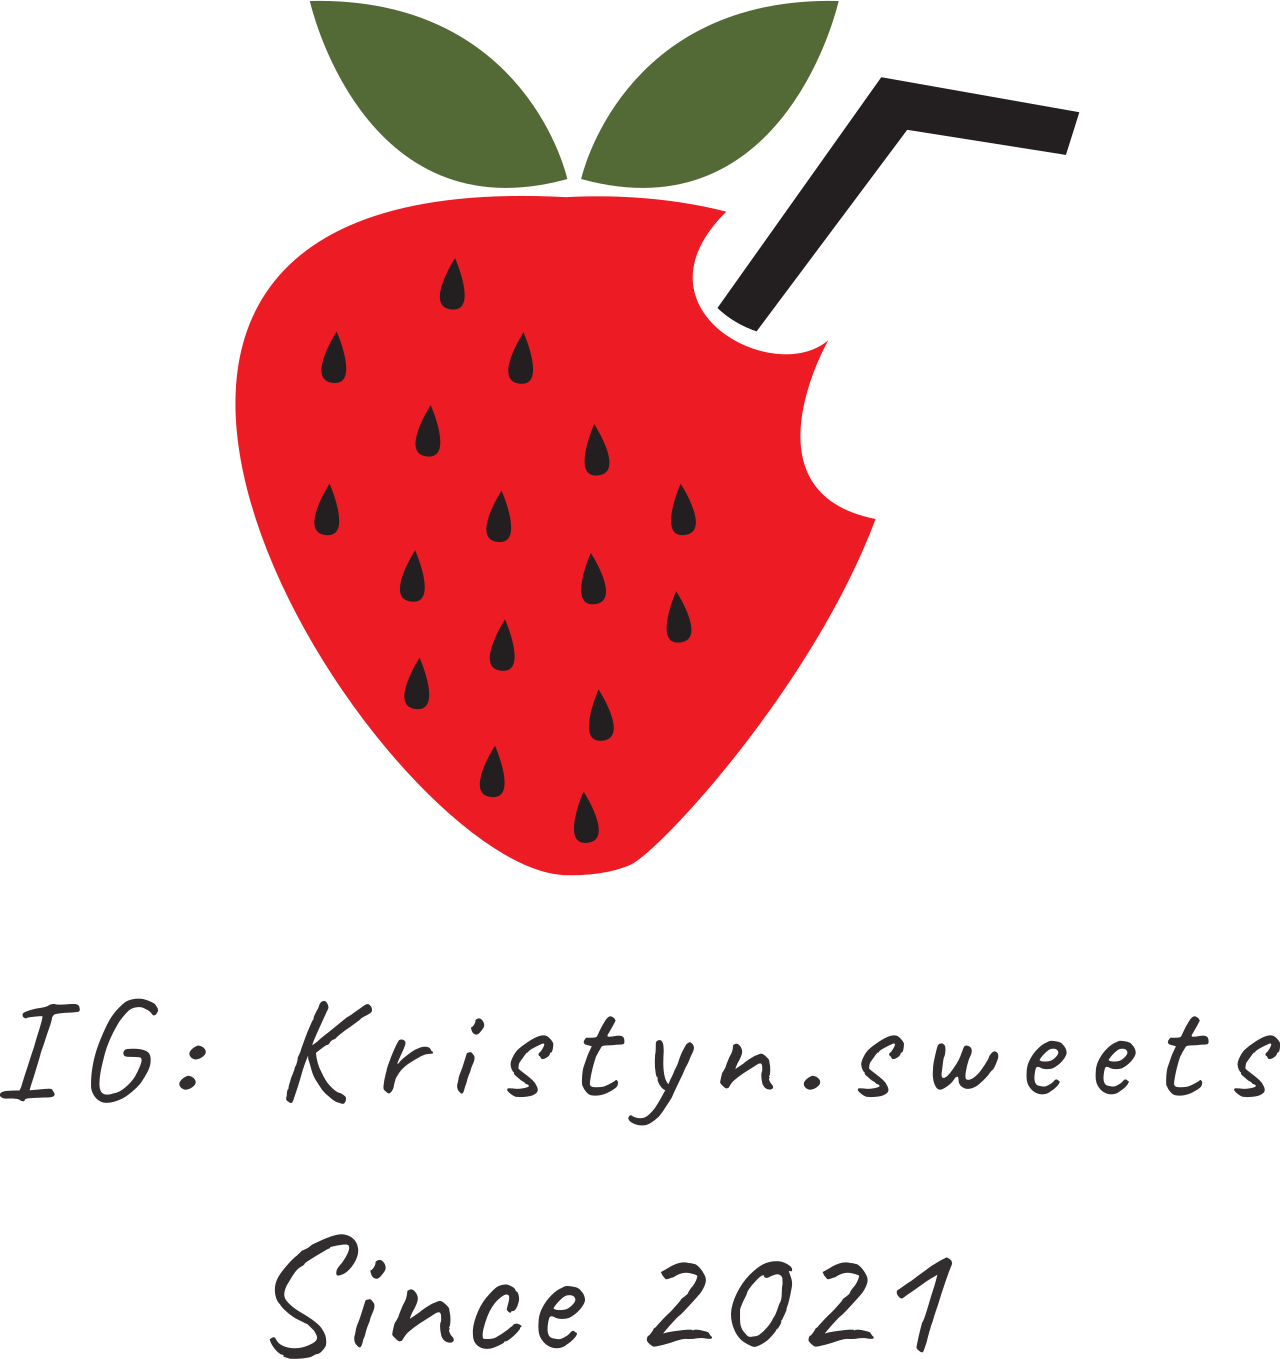 IG: Kristyn.sweets's logo